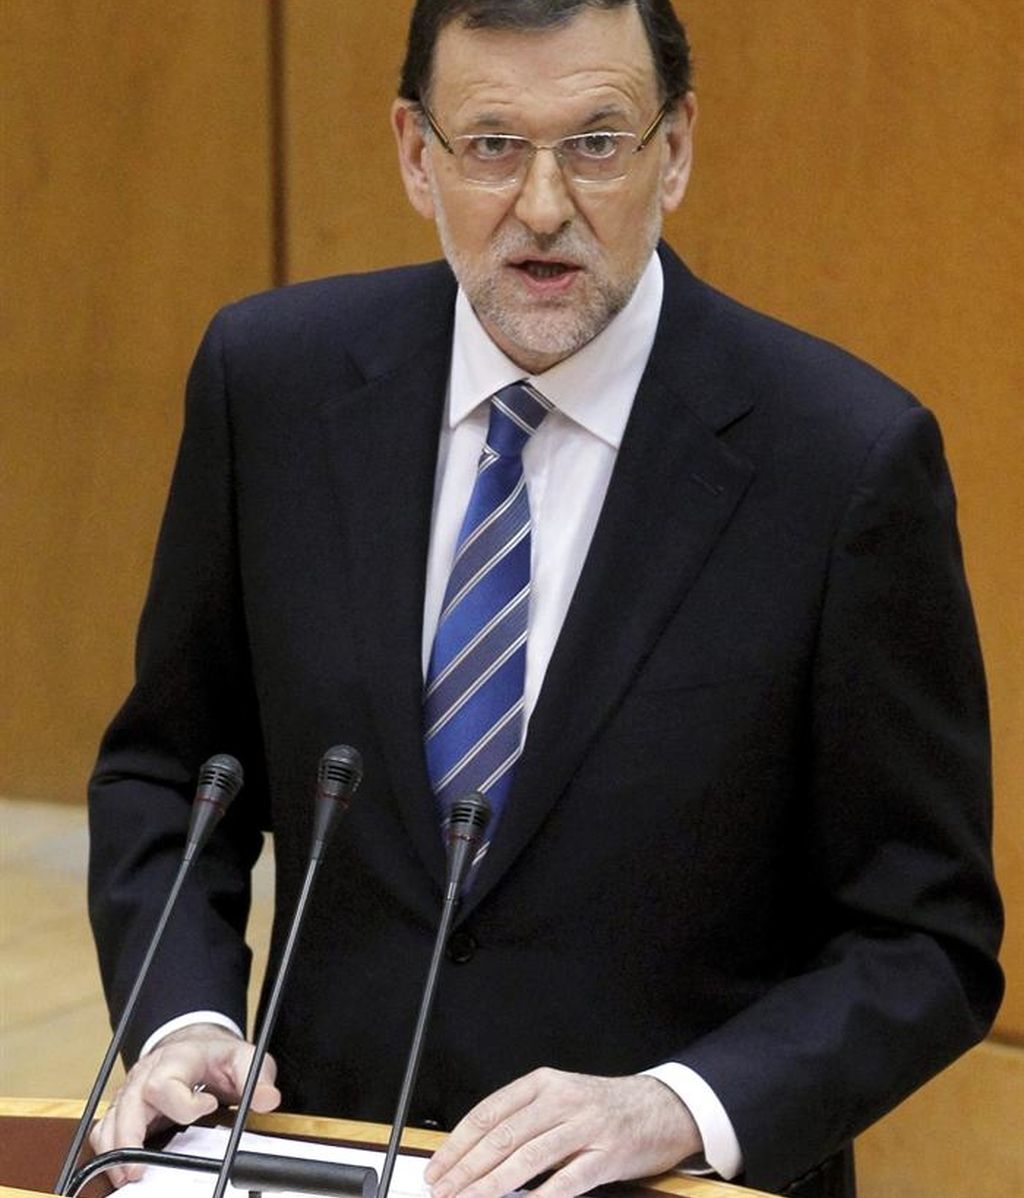 ¿Ha convencido Rajoy a los españoles?